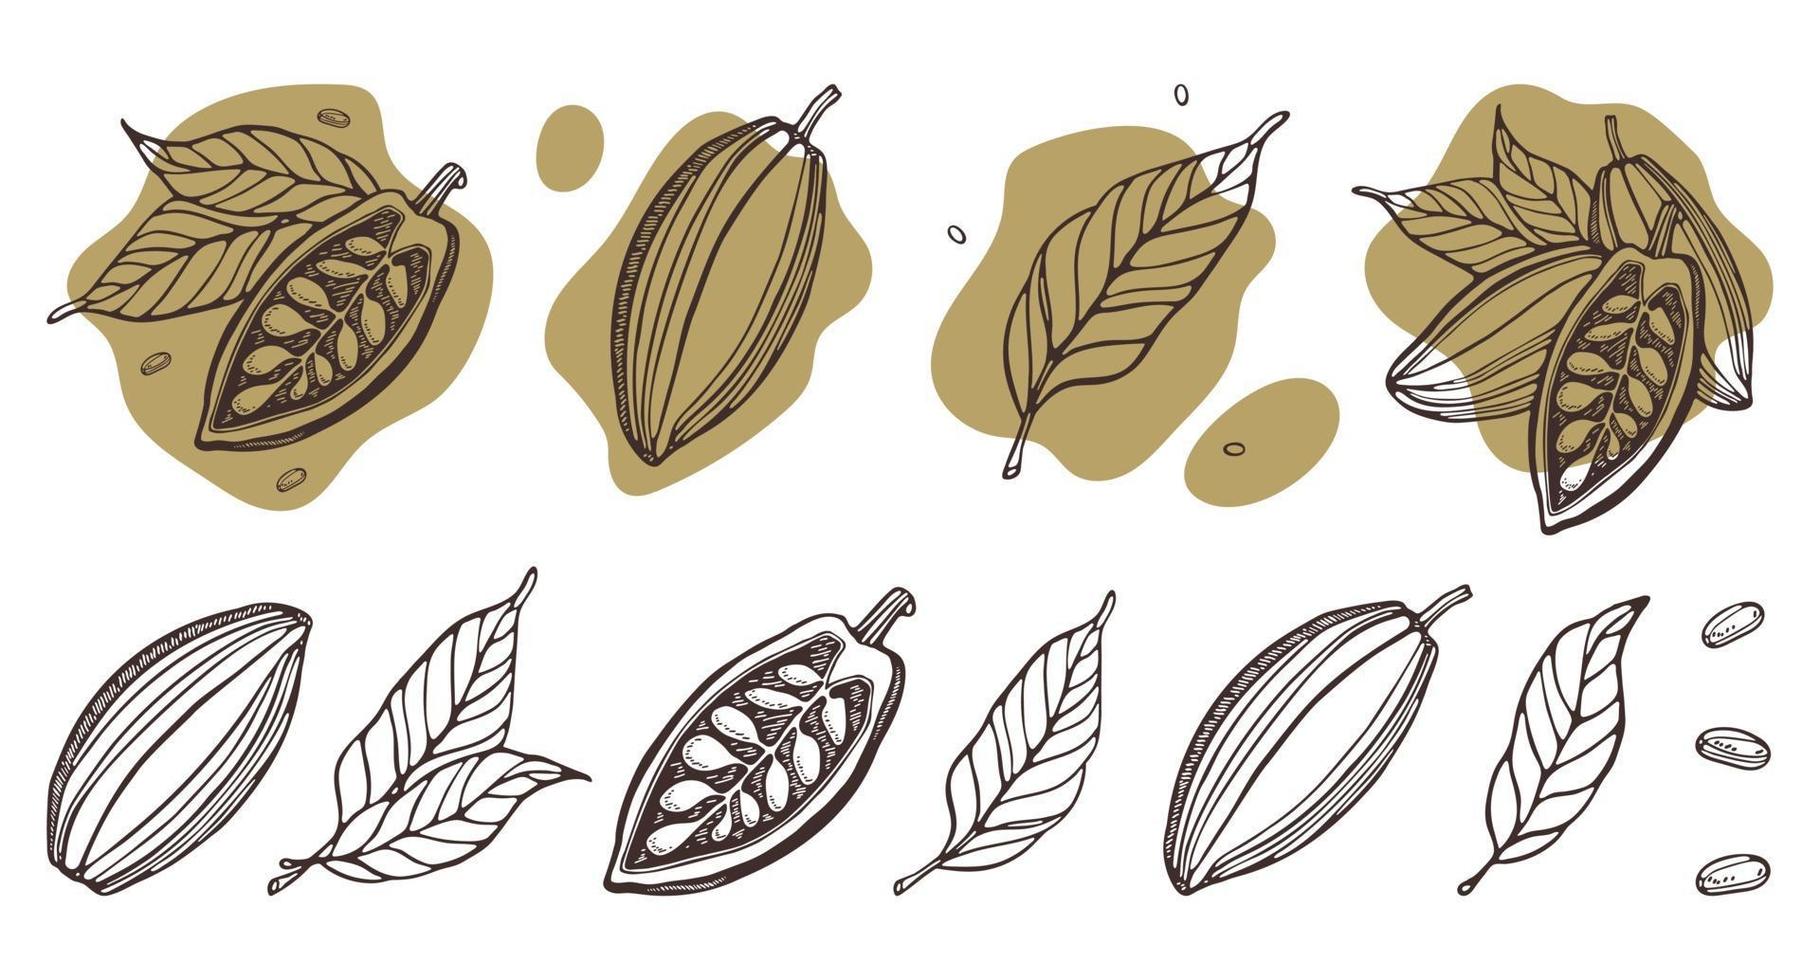 kakaosats. handritade vektor kakaobönor, blad. doodle disposition stil